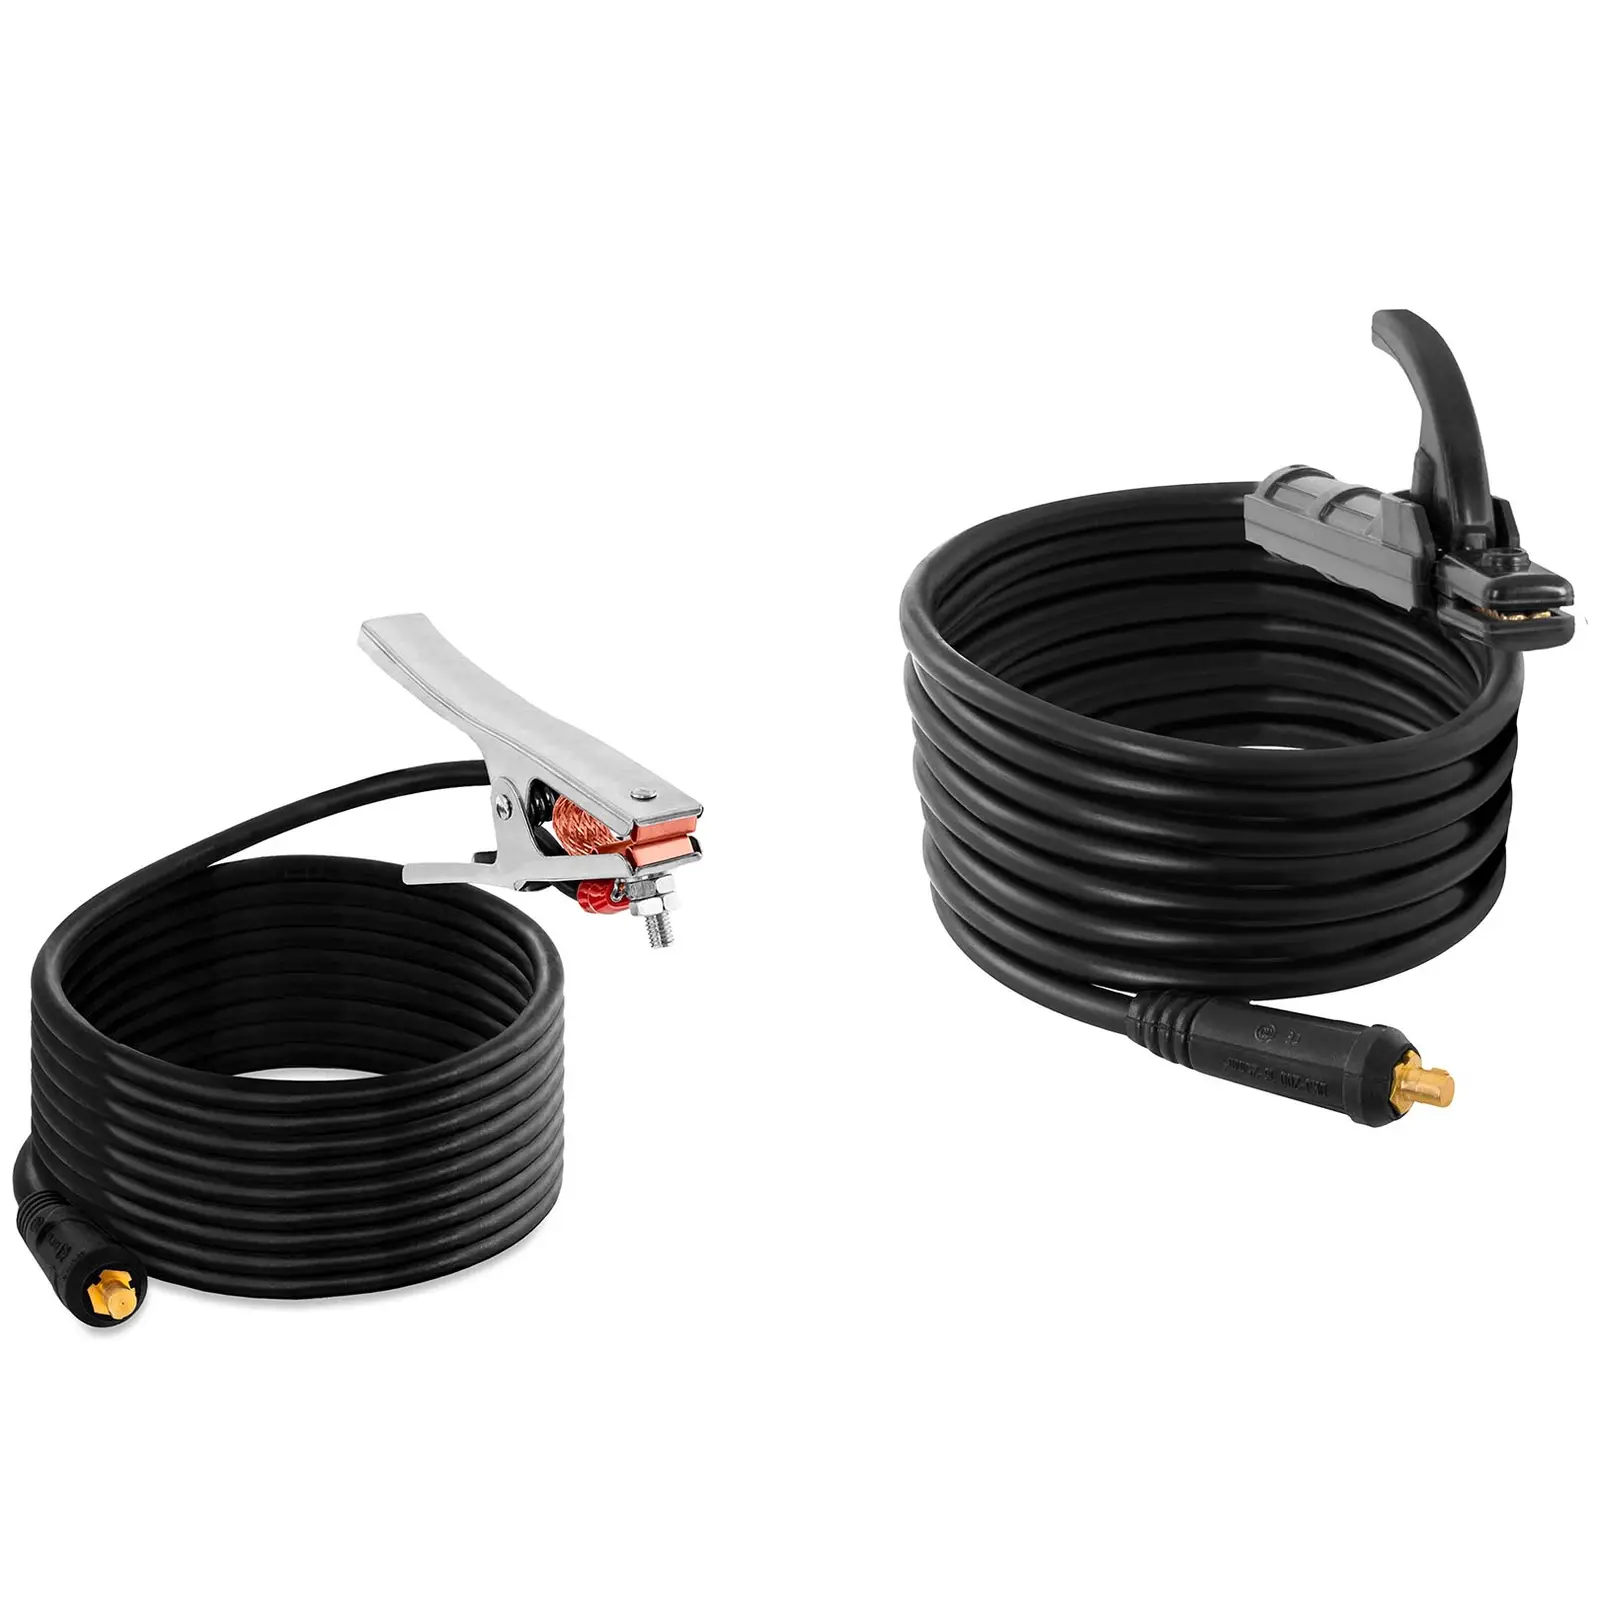 Elektroden Schweißgerät - IGBT - 120 A -  Duty Cycle 60 % - 8 m Kabel